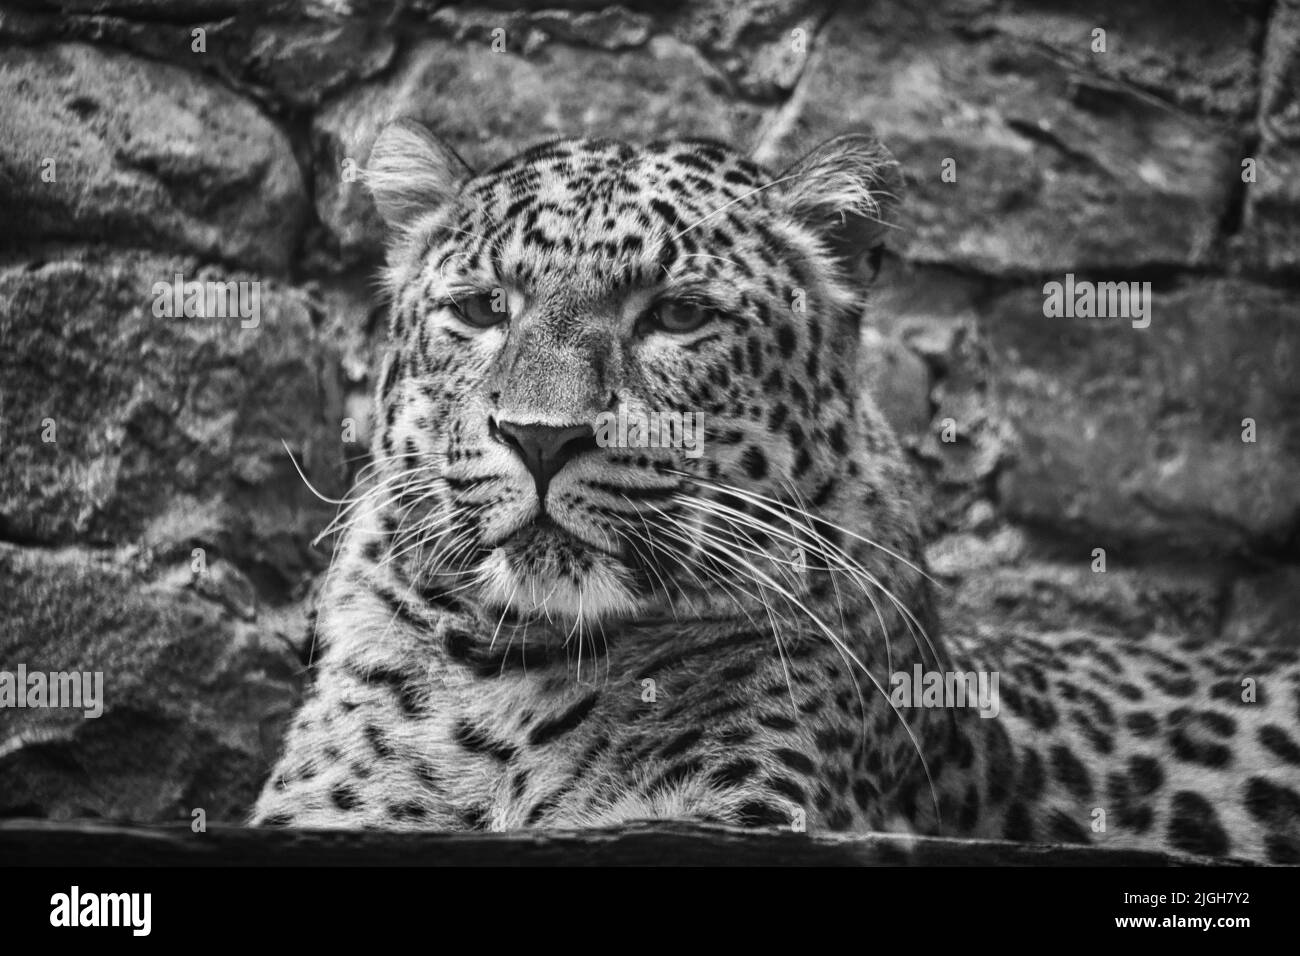 Jaguar in bianco nero dietro l'erba. Pelliccia macchiata. Il gatto grande è un predatore. Guardando verso lo spettatore. Foto animale di un cacciatore Foto Stock